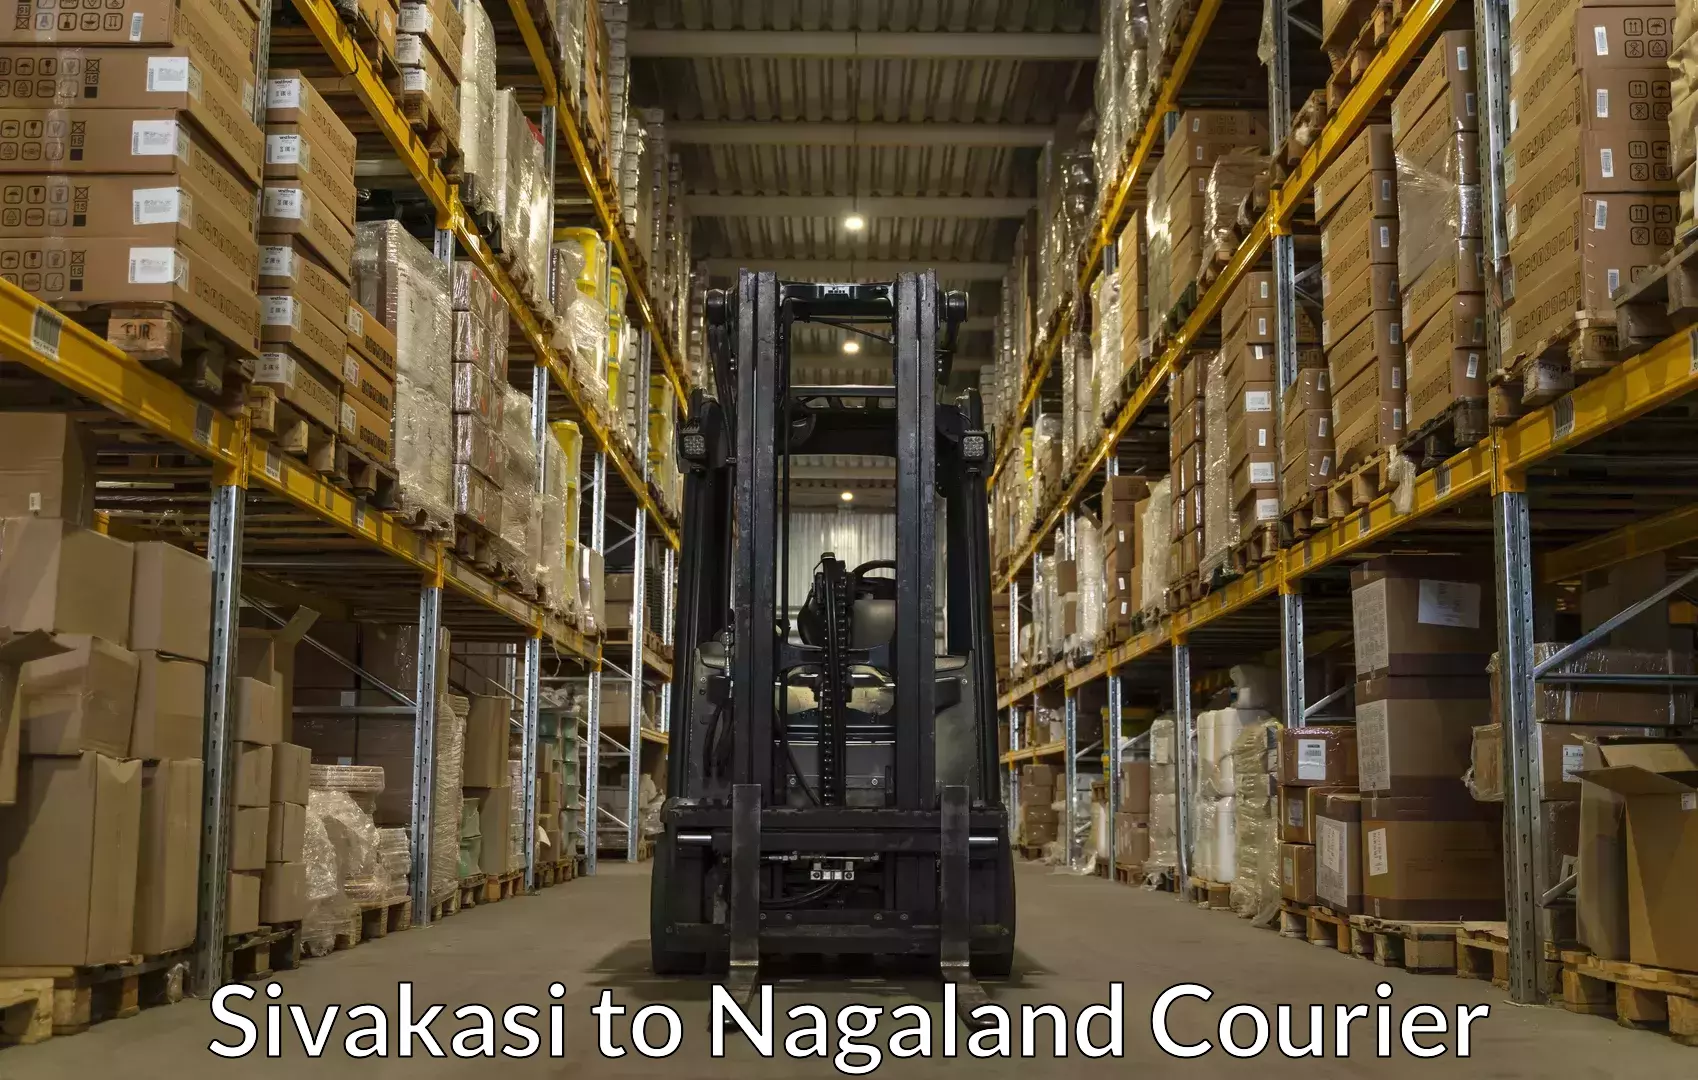 Baggage shipping advice Sivakasi to Nagaland